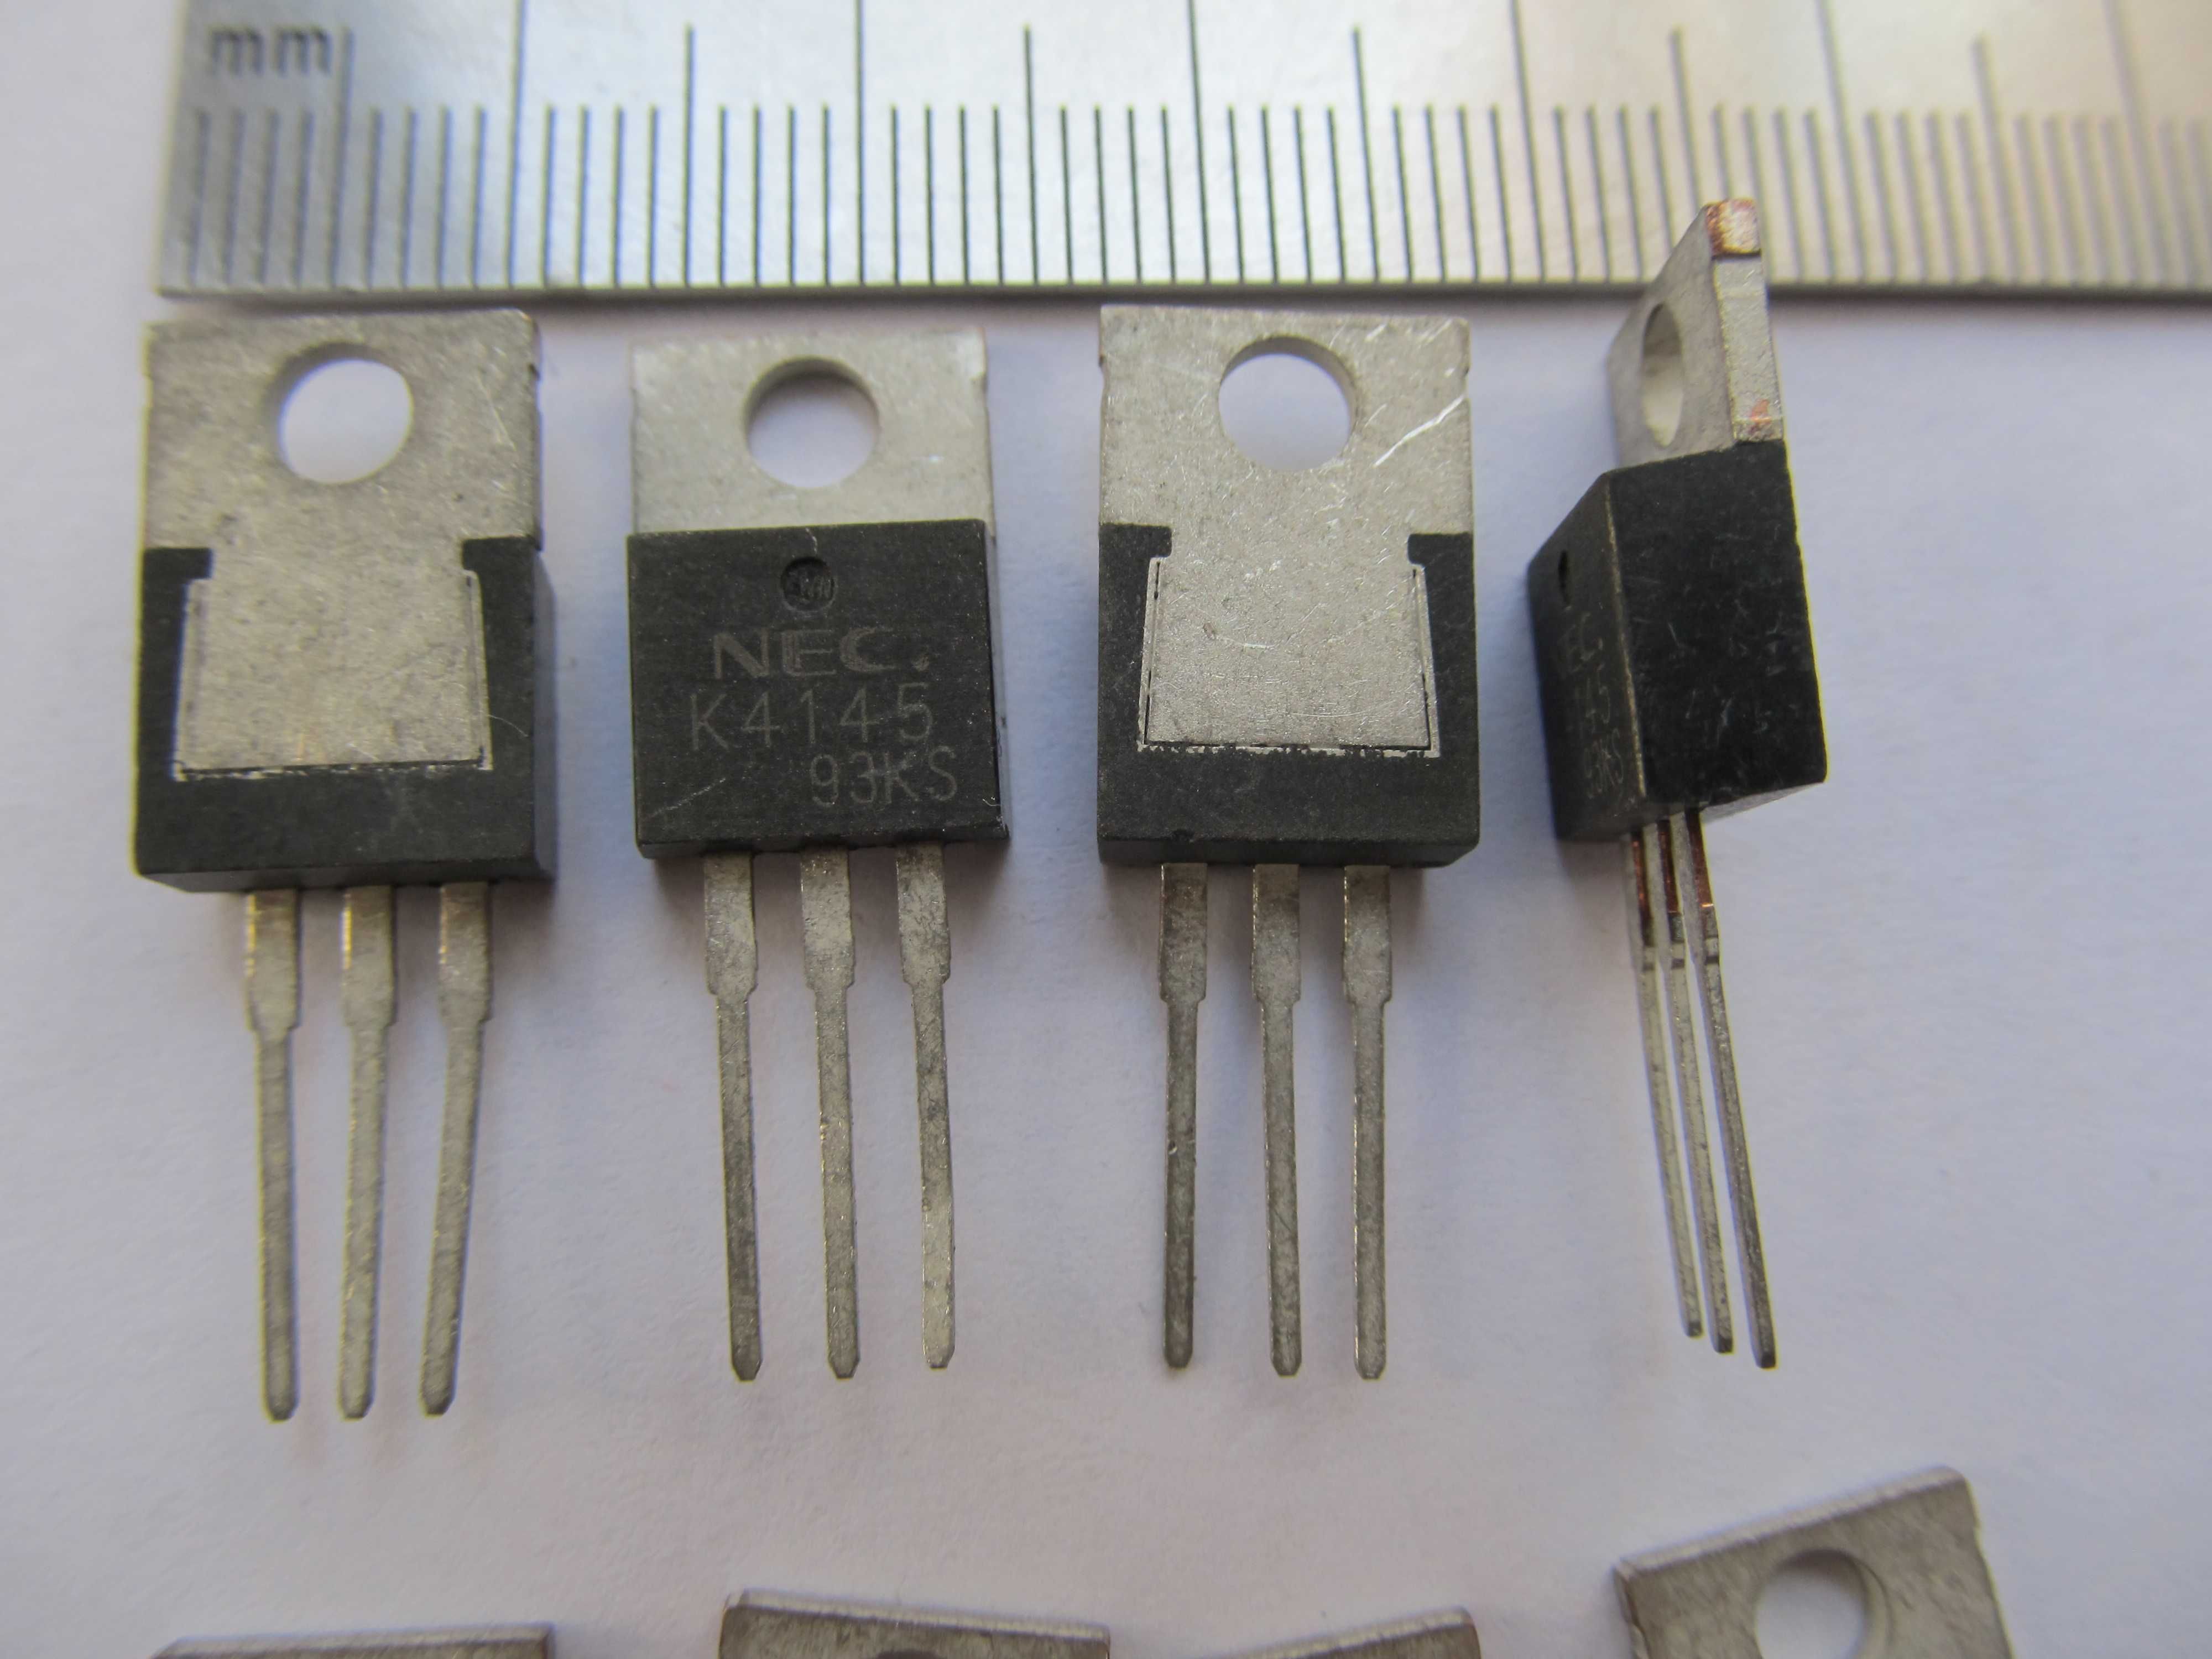 Транзисторы для Инвентора K4145 93KS Электродвигателя